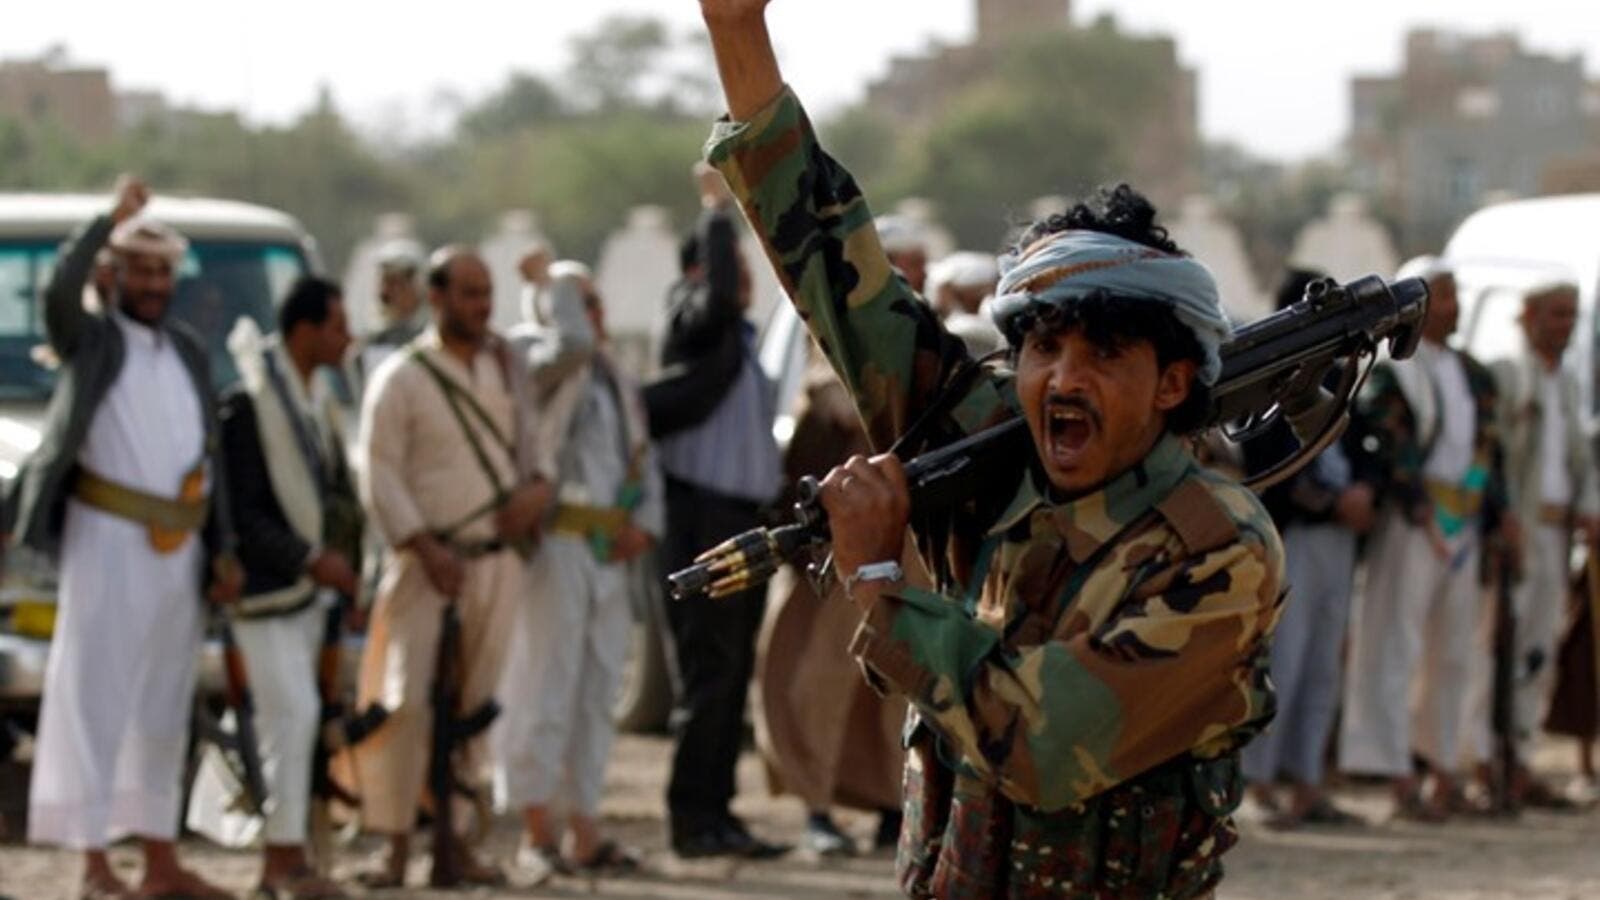 آخر التطورات اليمنية بعد إخماد فتنة "ياسر العوضي" هزائم متتالية لتحالف العدوان السعودي جنوب محافظة مأرب + صور